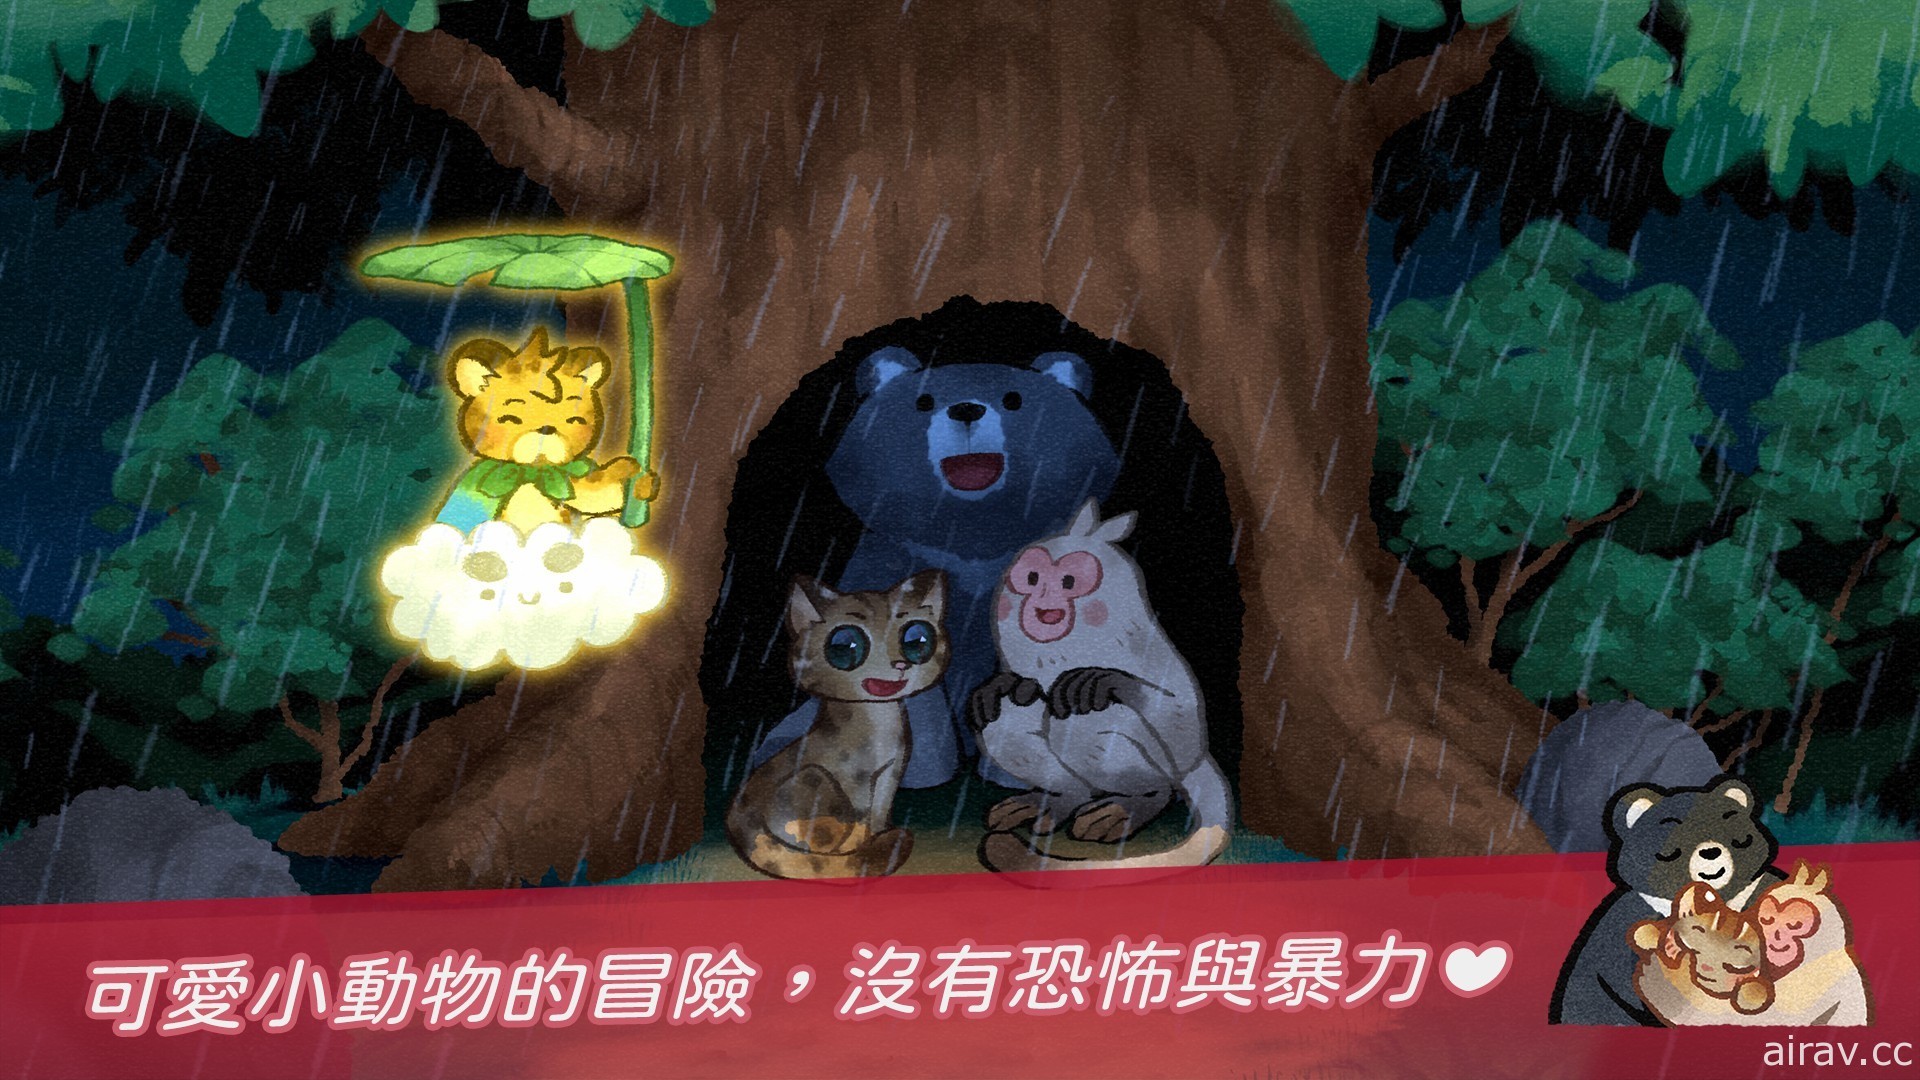 益智解谜游戏《回家 - Homeward》推出 帮助小黑熊、小猕猴等回归家乡